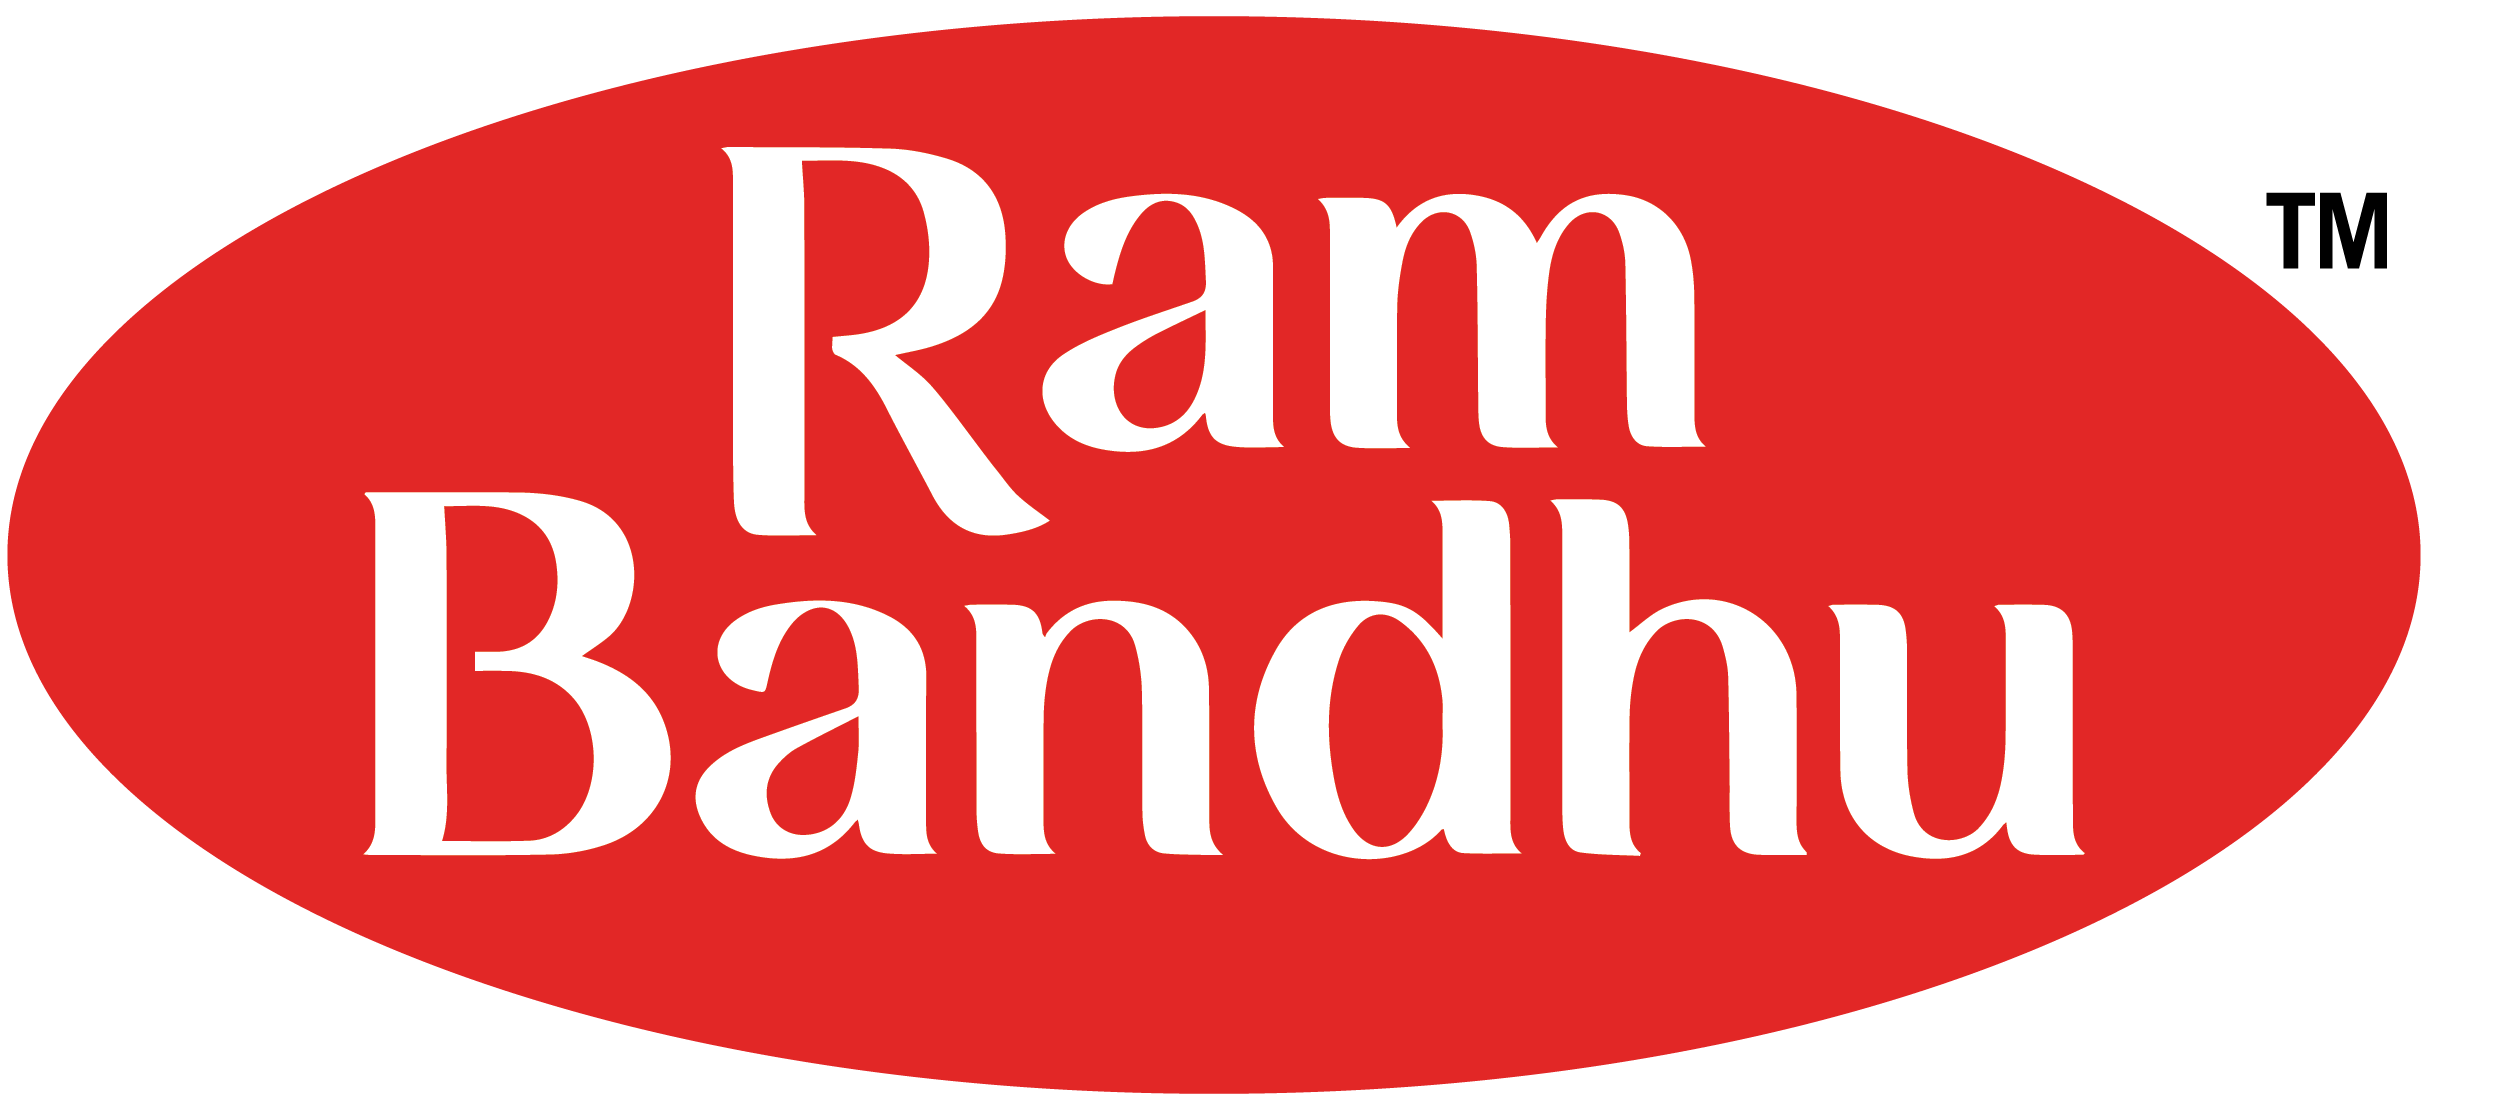 Ram Bandhu